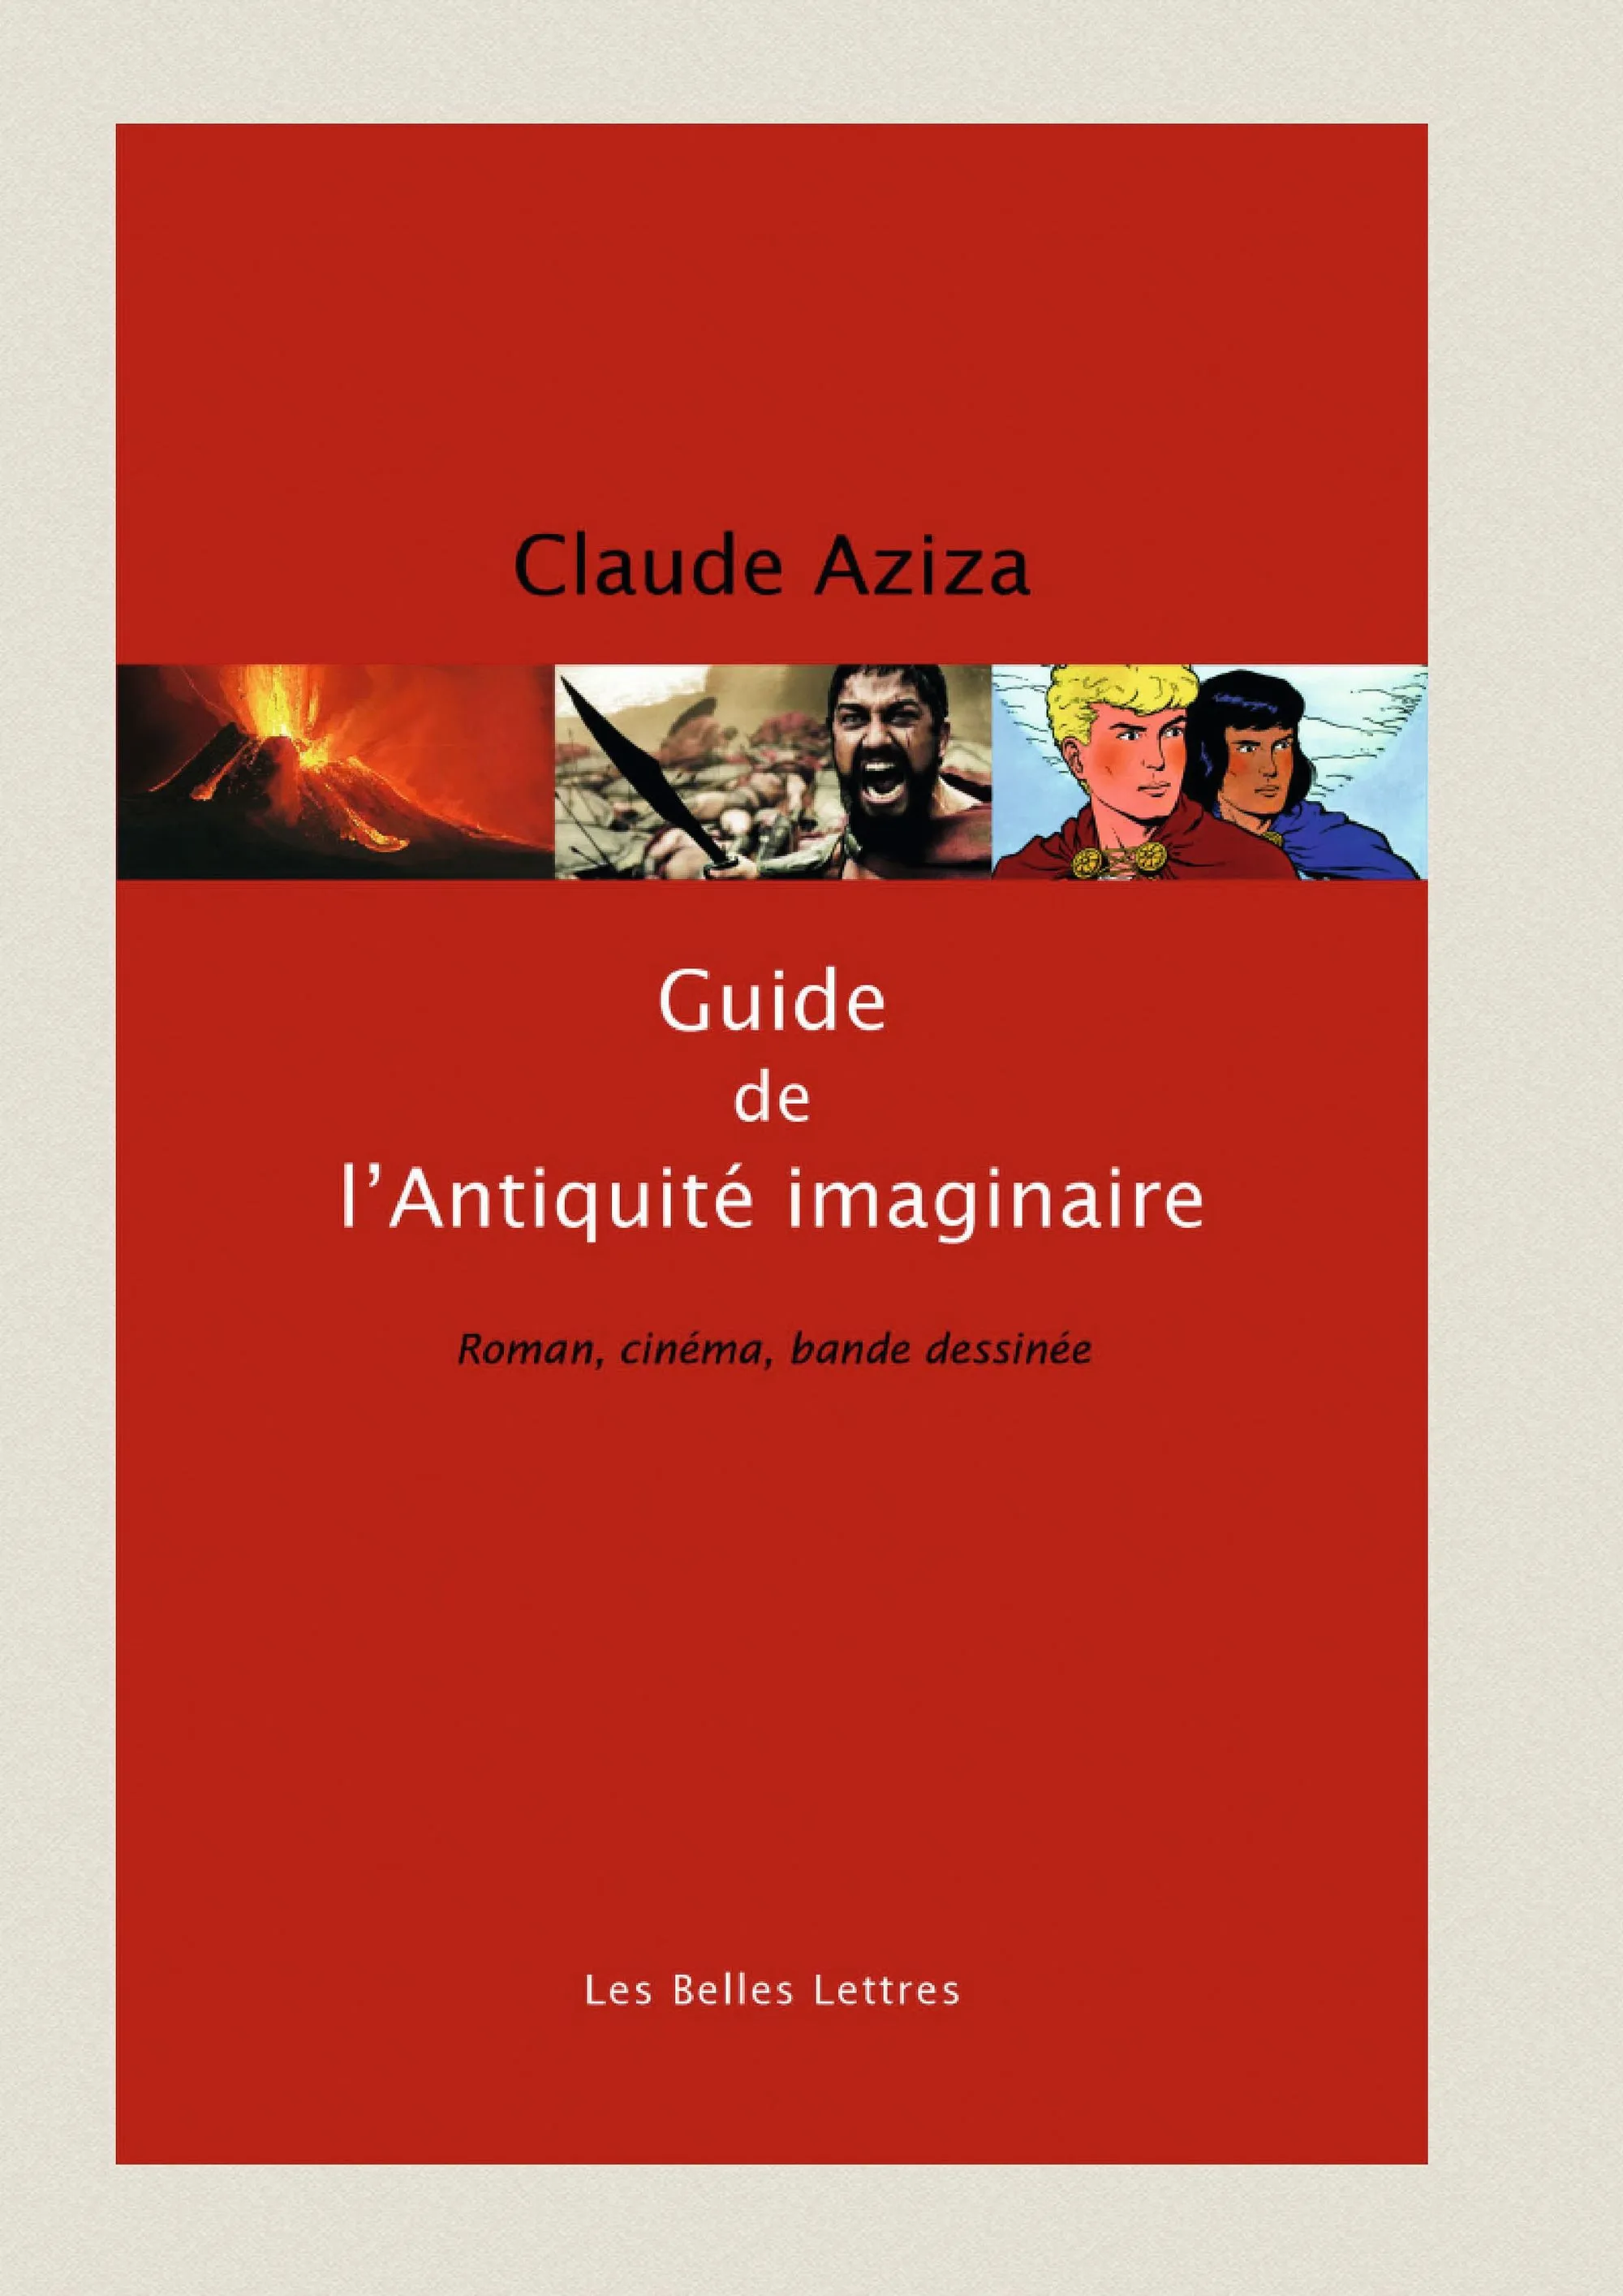 Claude Aziza, Guide de l'Antiquité imaginaire, Belles Lettres, 2016